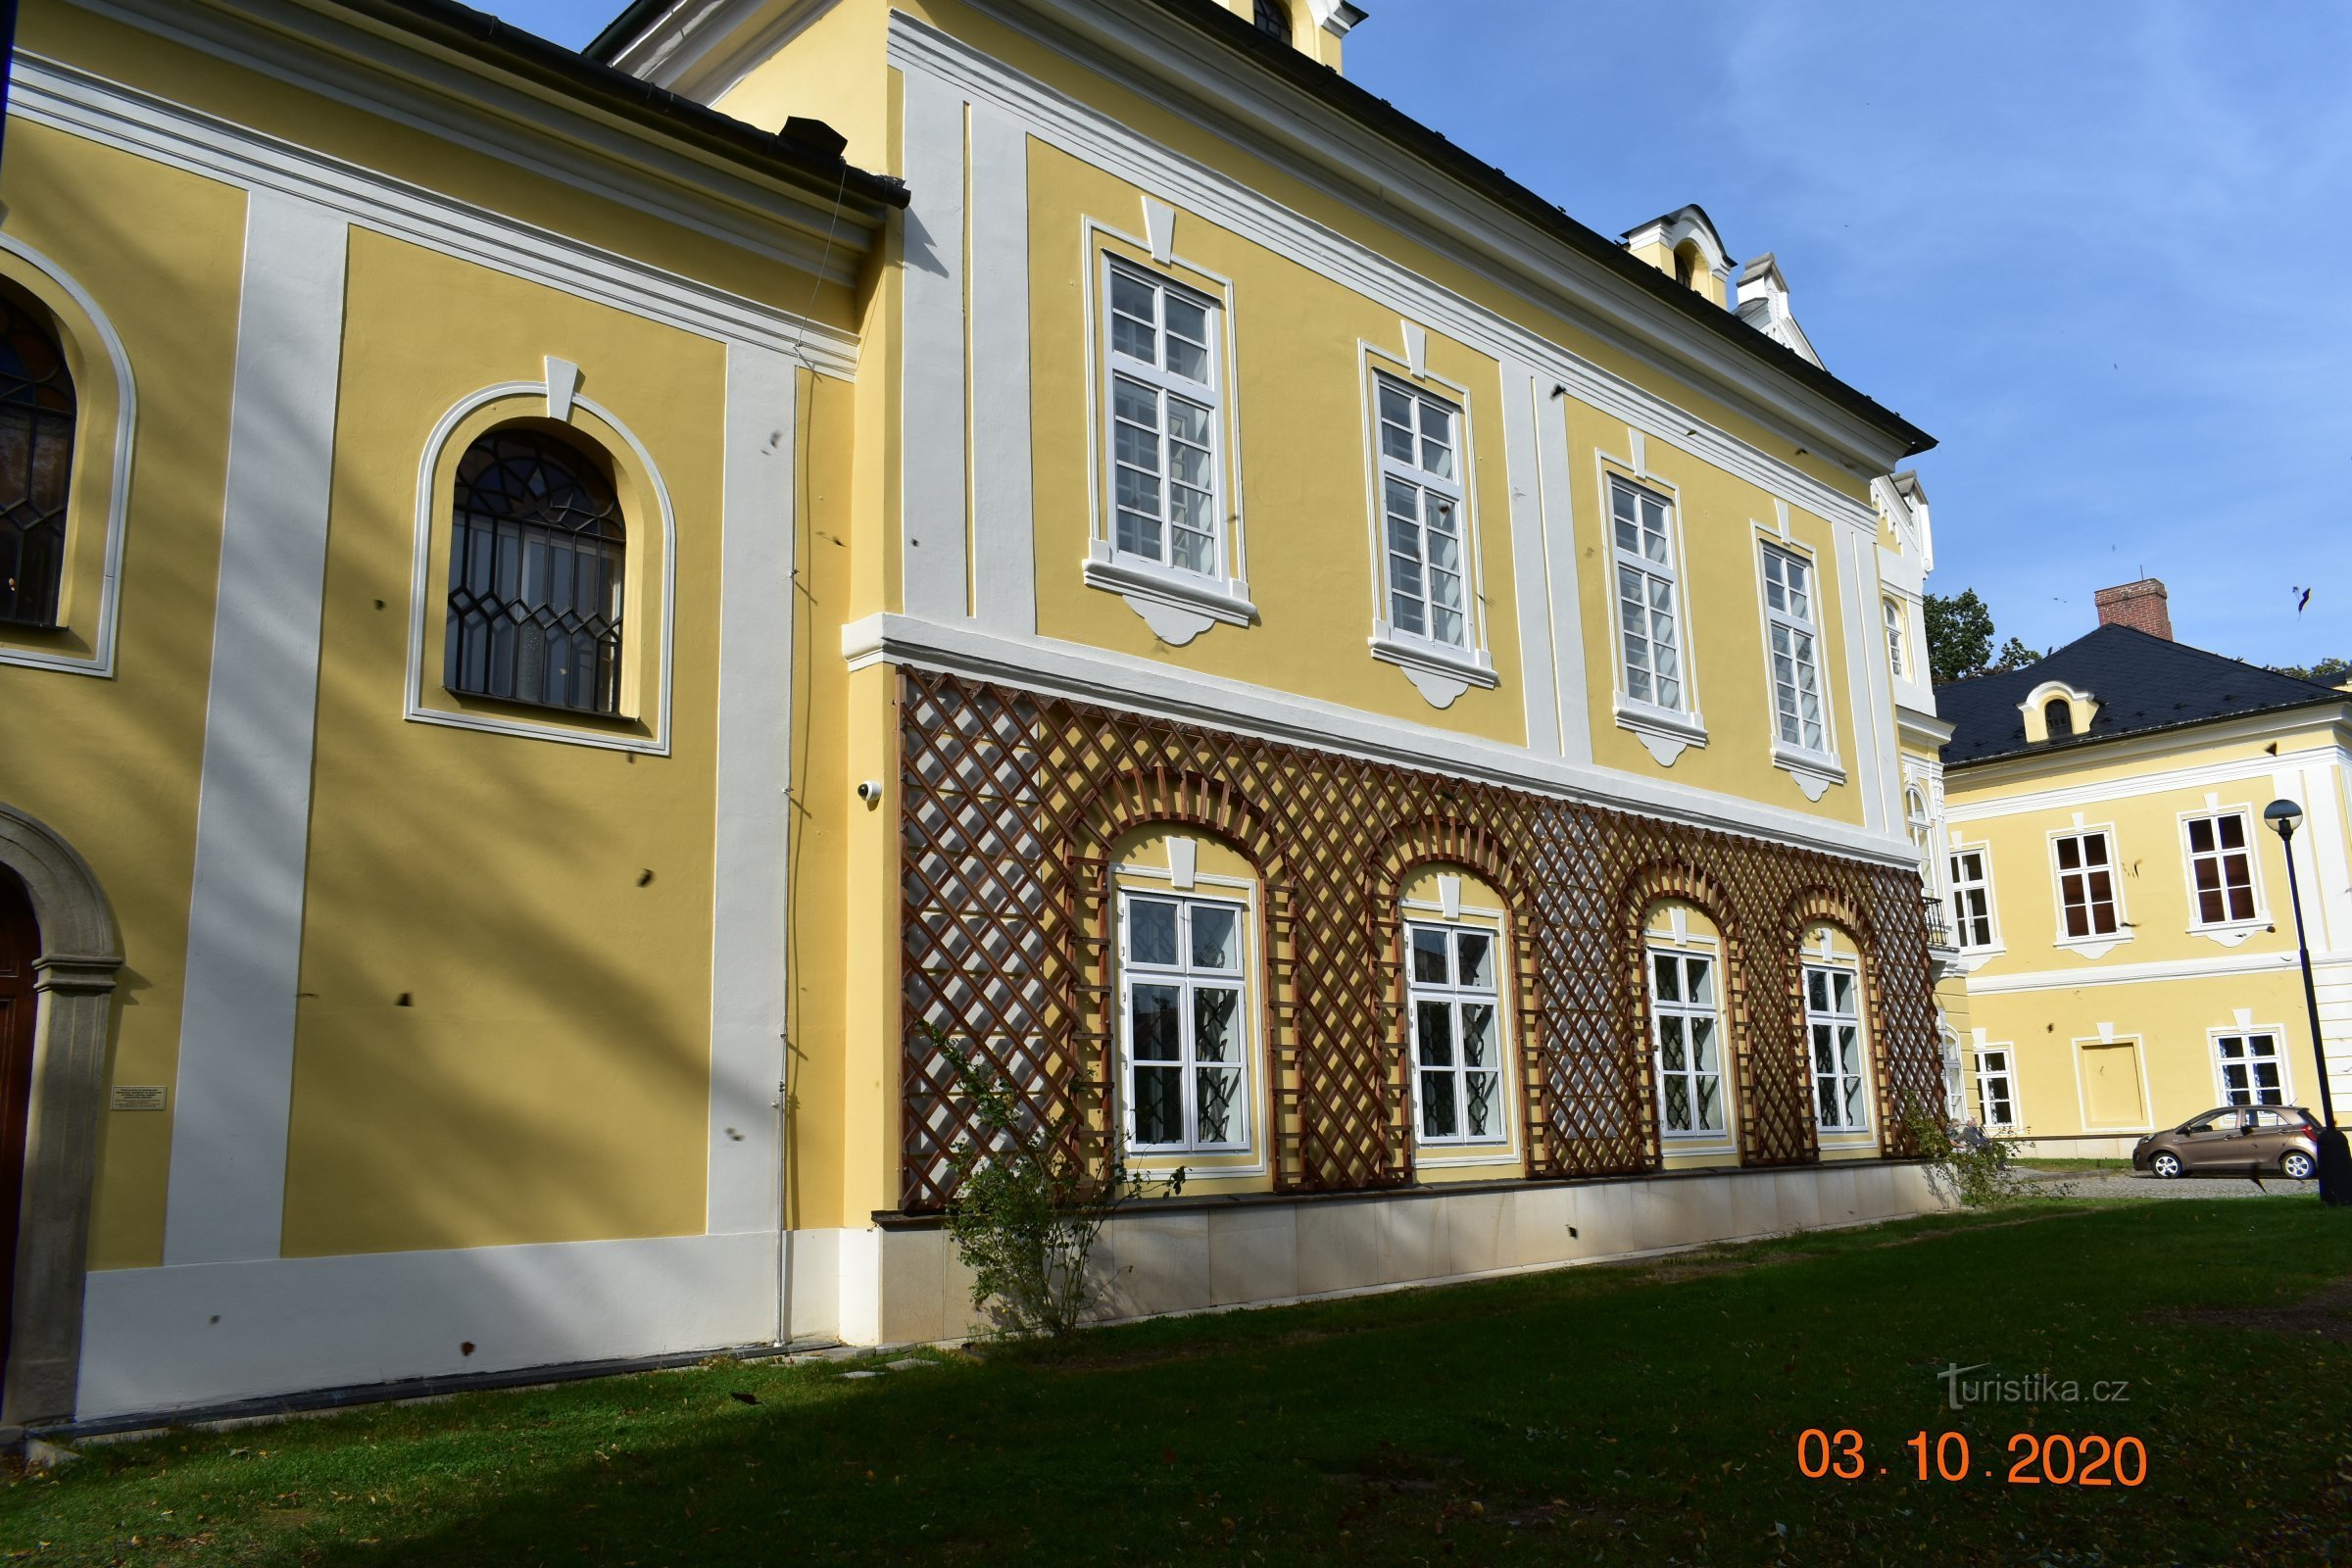 Castelo Nová Horka em Studénka (inaugurado em 28.9.2020 de setembro de XNUMX)